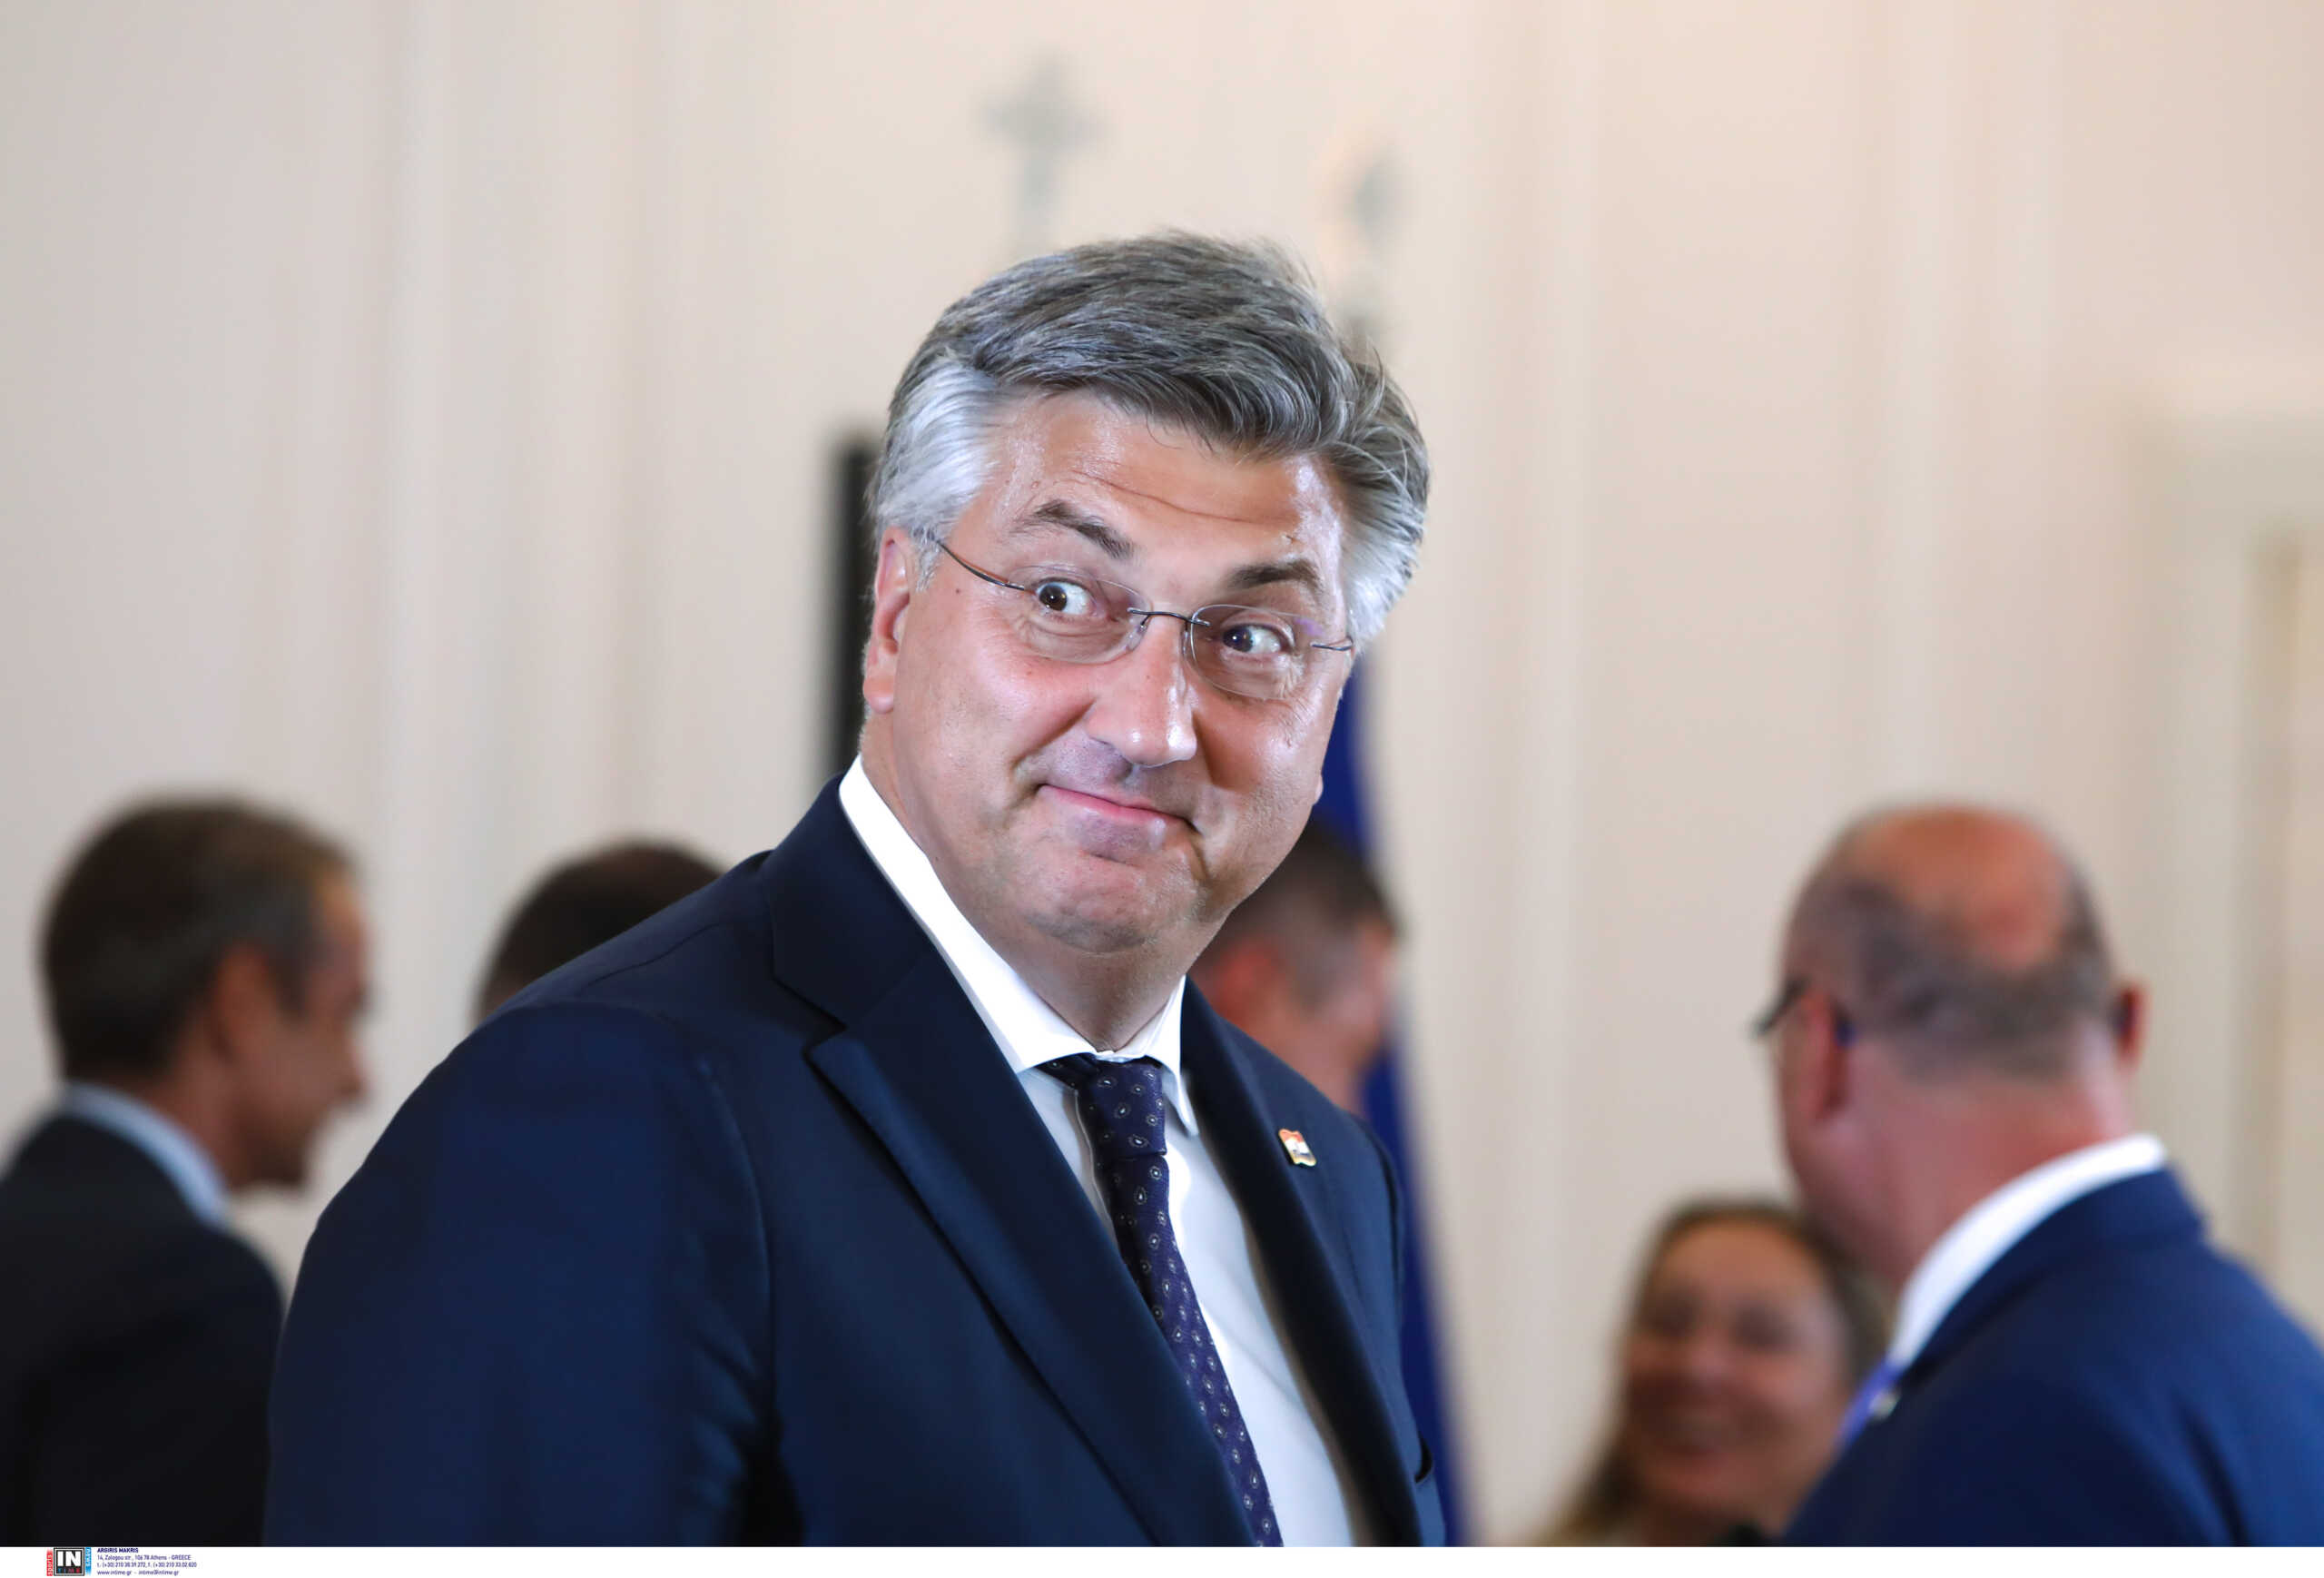 Μιχάλης Κατσουρής: «Περιμένουμε ελεύθερη και δίκαιη δίκη» δηλώνει ο πρωθυπουργός της Κροατίας για τους συμπατριώτες του χούλιγκαν